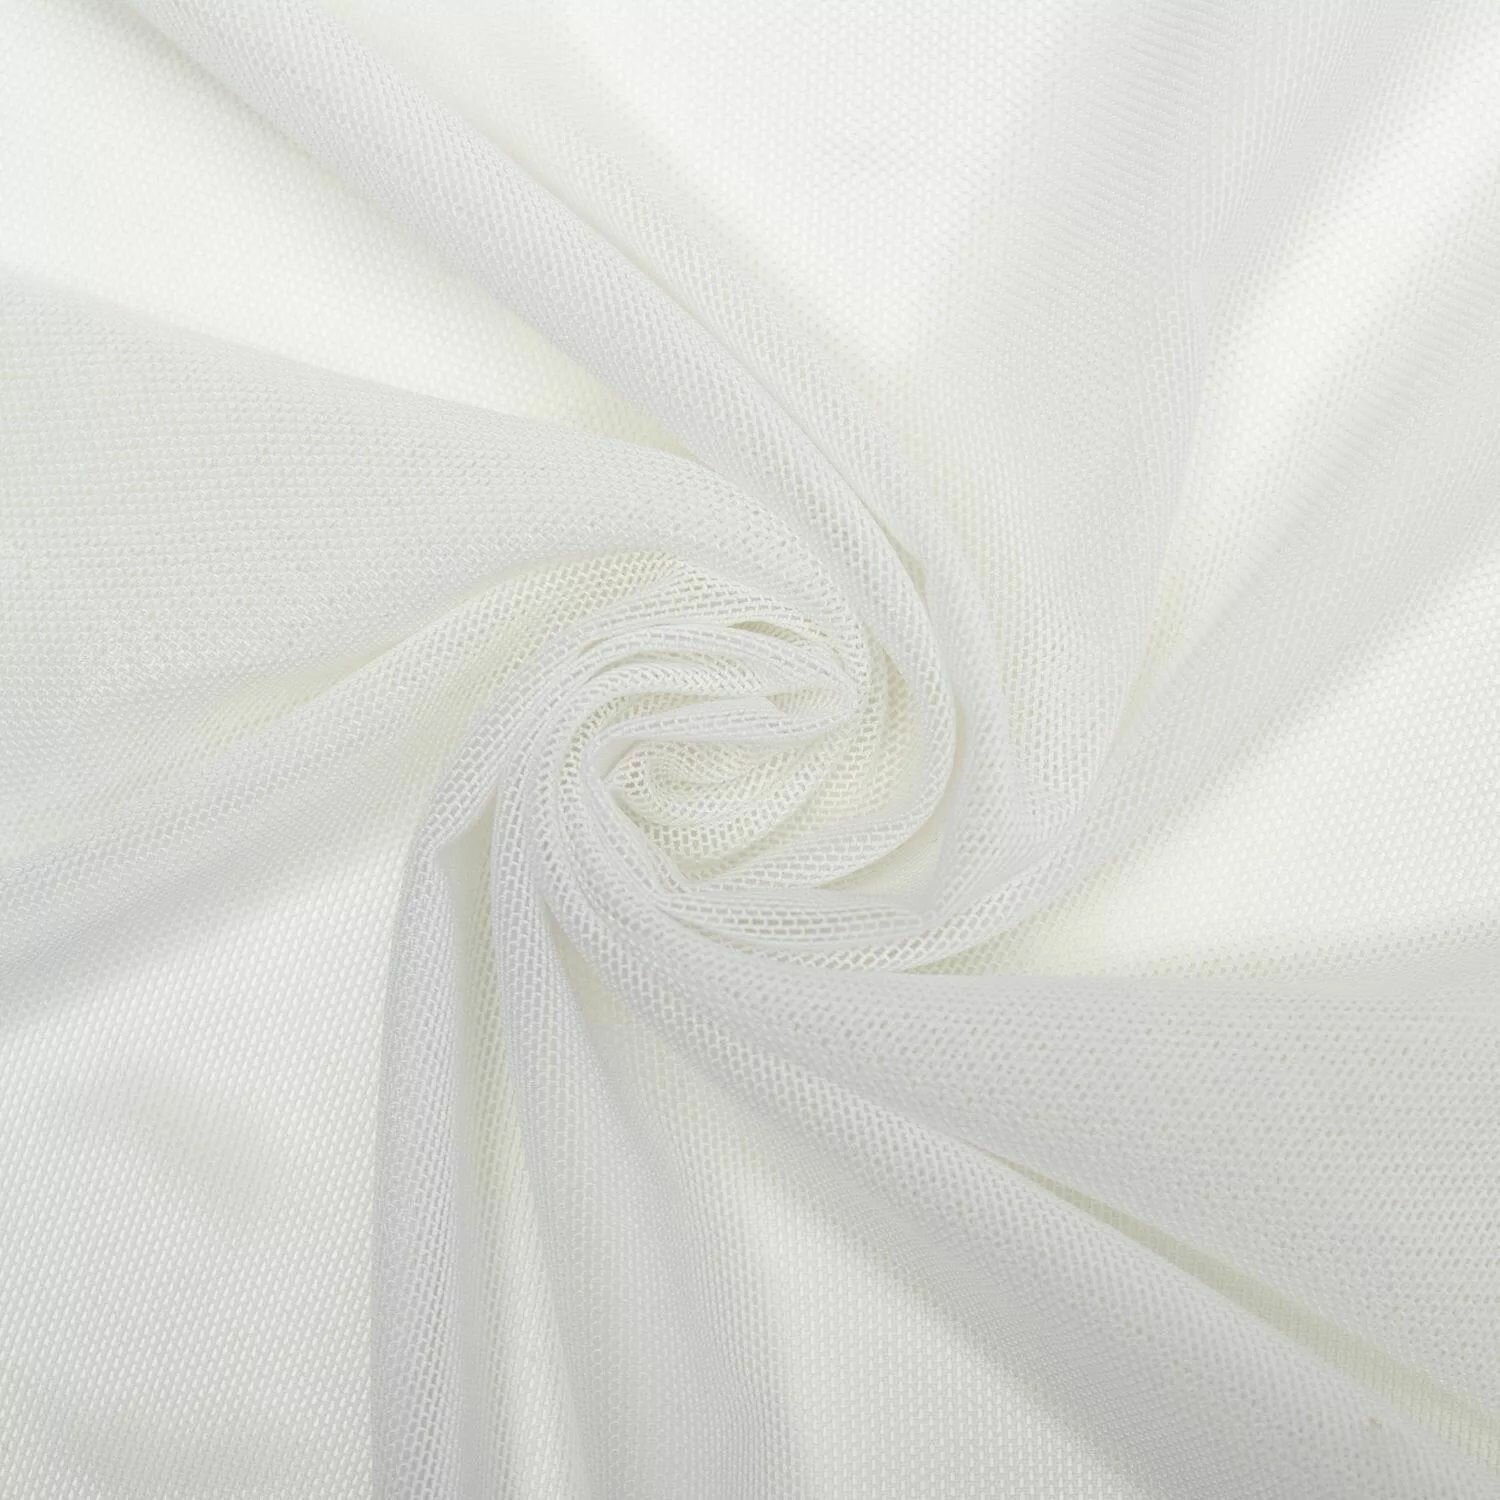 Ткань сетка трикотажная эластичная стрейч для белья, купальников, одежды Белая Ширина - 155 см Длина - 1 метр Плотность - 90 г/м